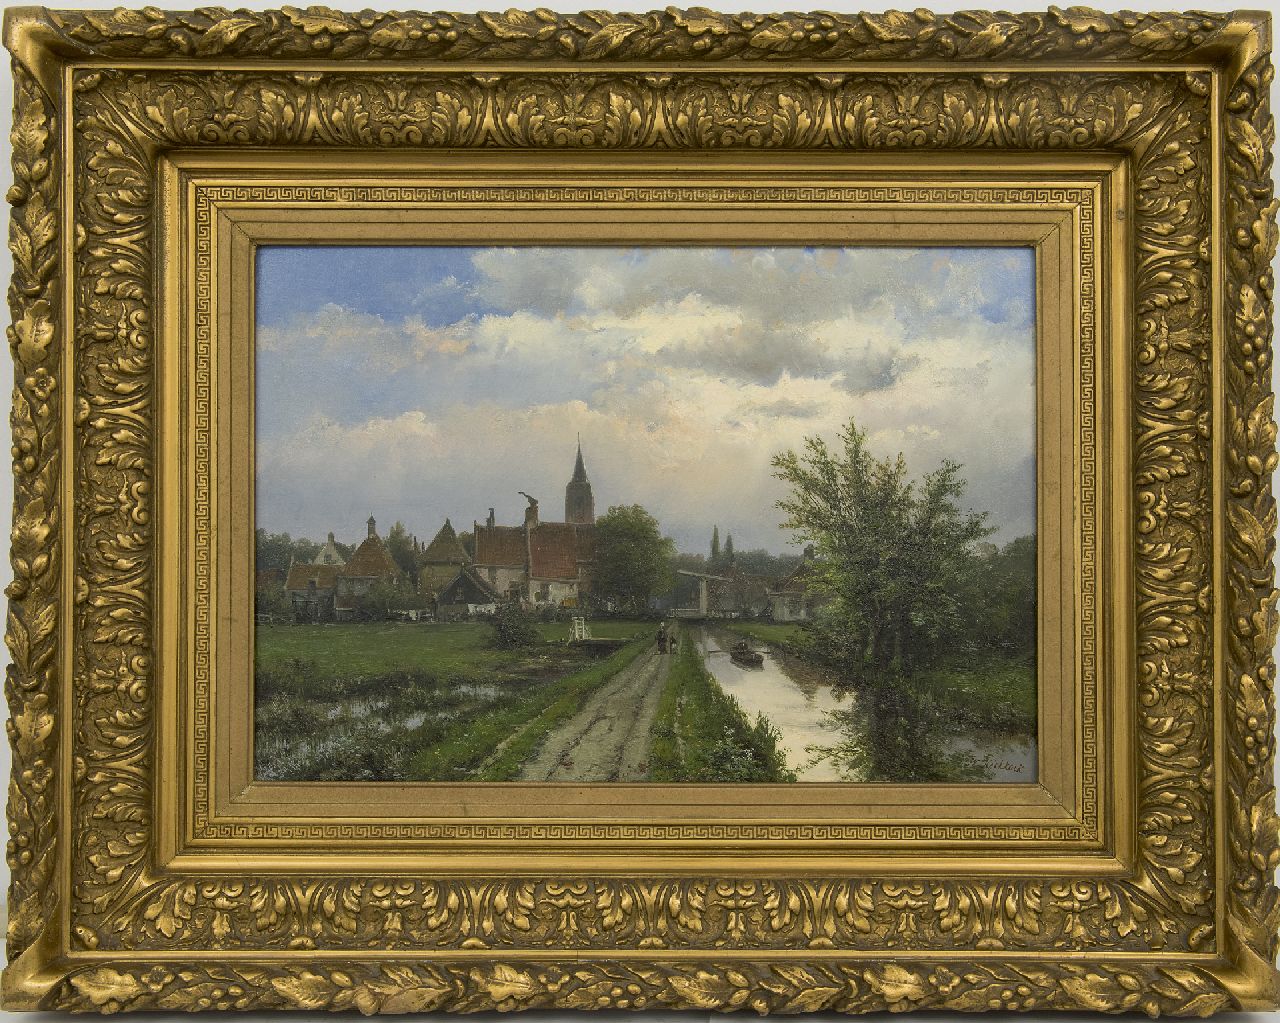 Koekkoek W.  | Willem Koekkoek | Schilderijen te koop aangeboden | Landschap met dorp op de achtergrond, olieverf op doek 40,8 x 58,5 cm, gesigneerd rechtsonder